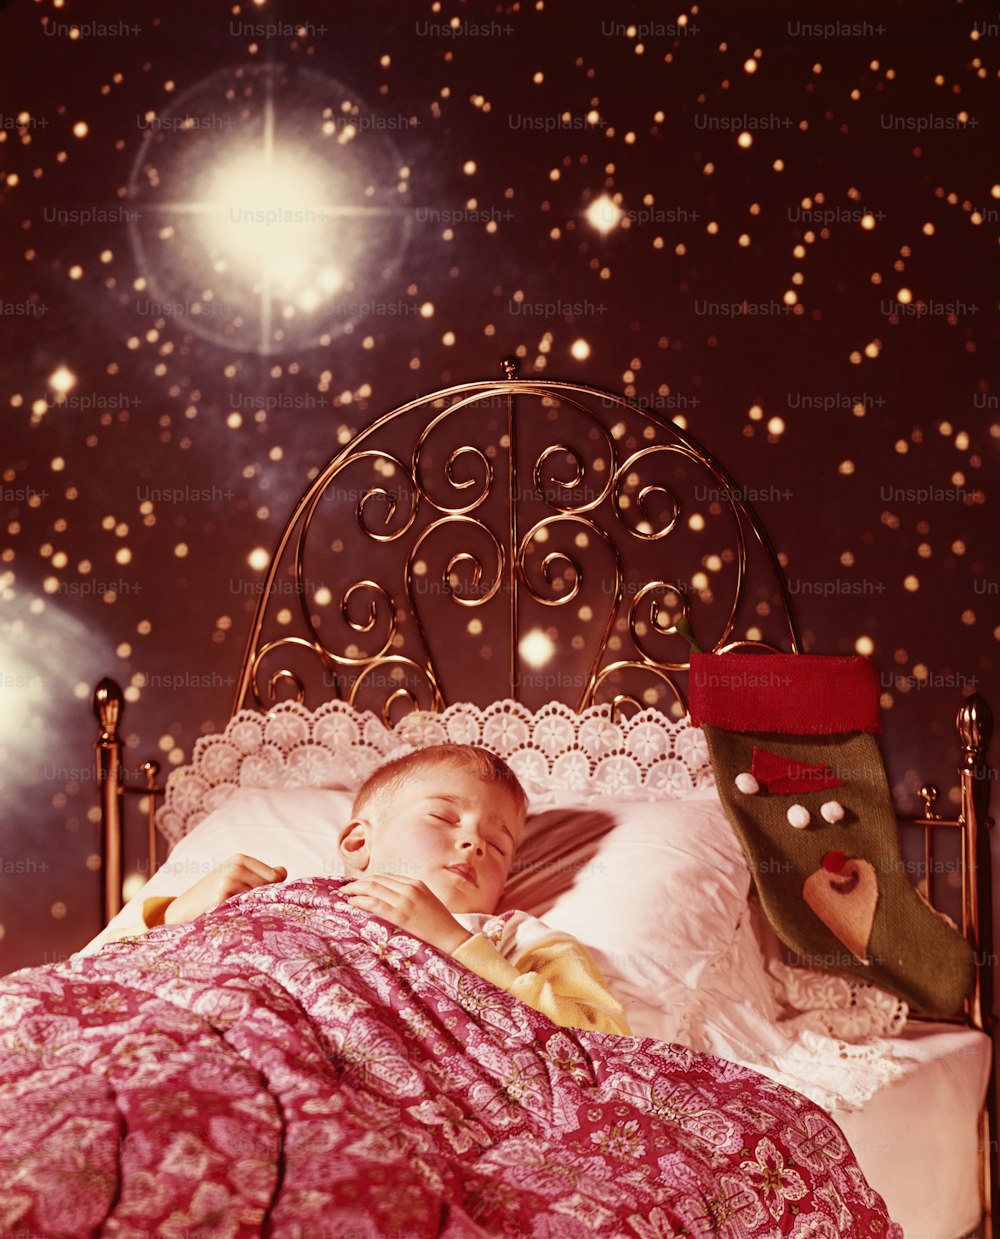 ESTADOS UNIDOS - CIRCA 1960s: Niño pequeño durmiendo en una cama de latón con medias navideñas e imágenes de sueños estrellados.